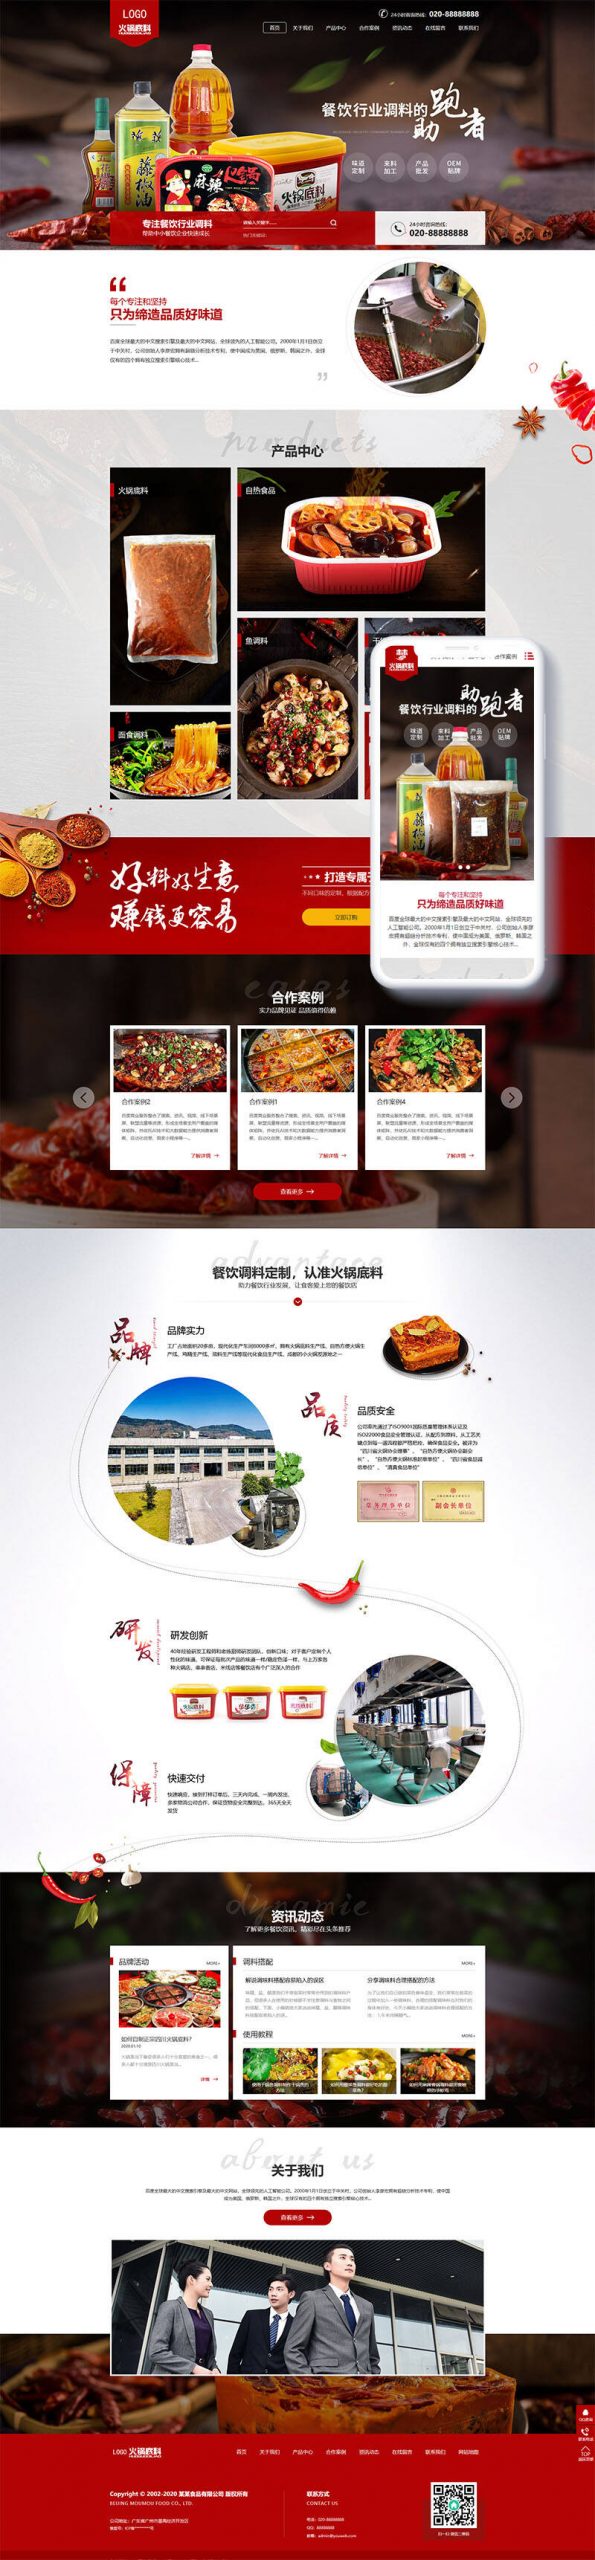 M538 高端火锅底料餐饮调料食品营销型网站织梦模板(带手机端)